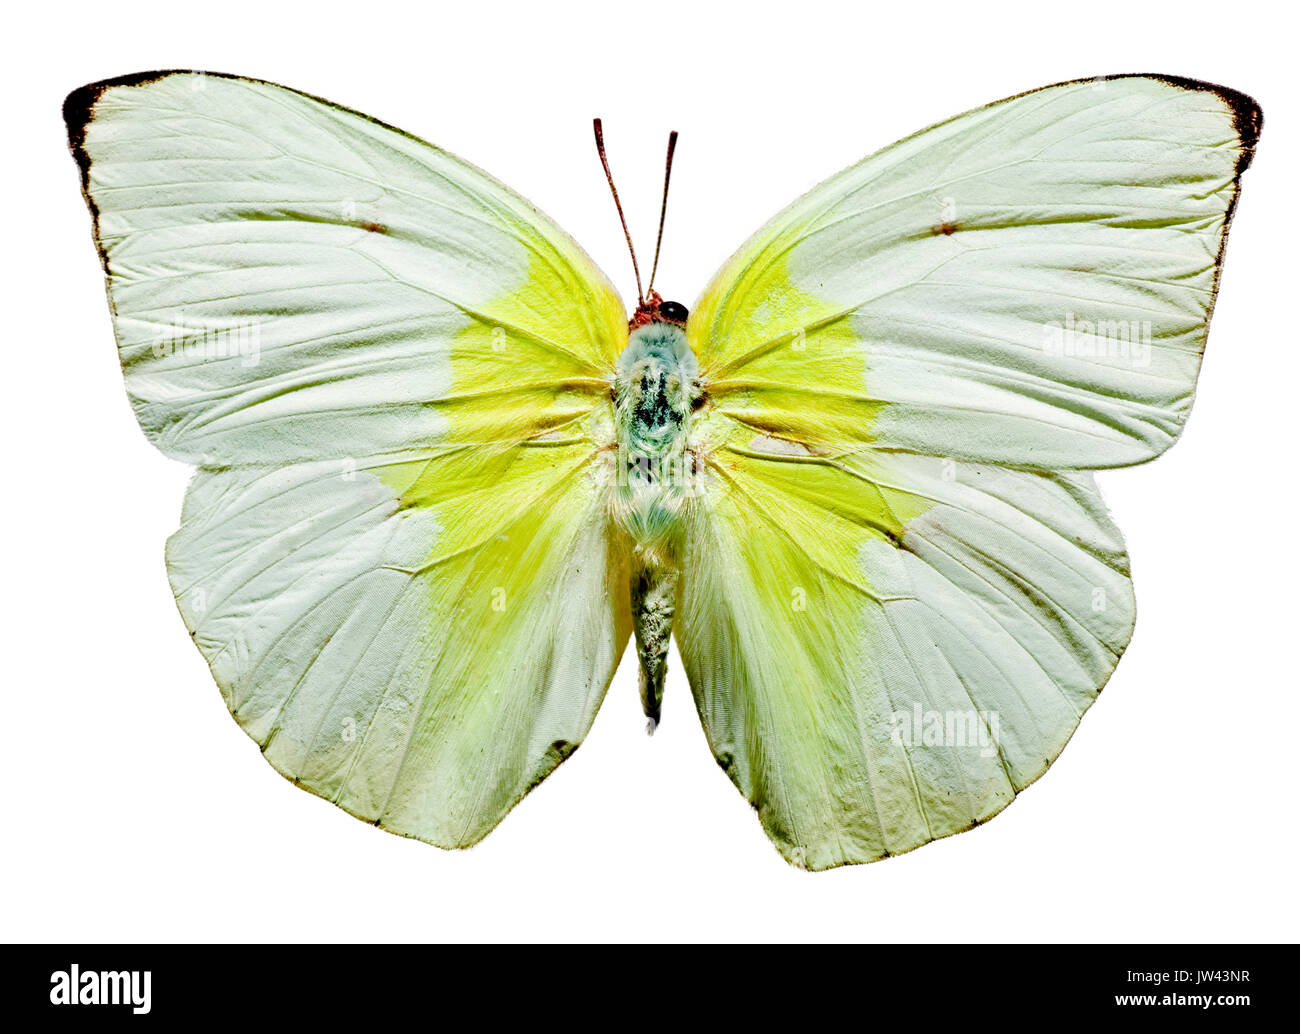 Limón mariposas emigrante superior e inferior, superior Foto de stock